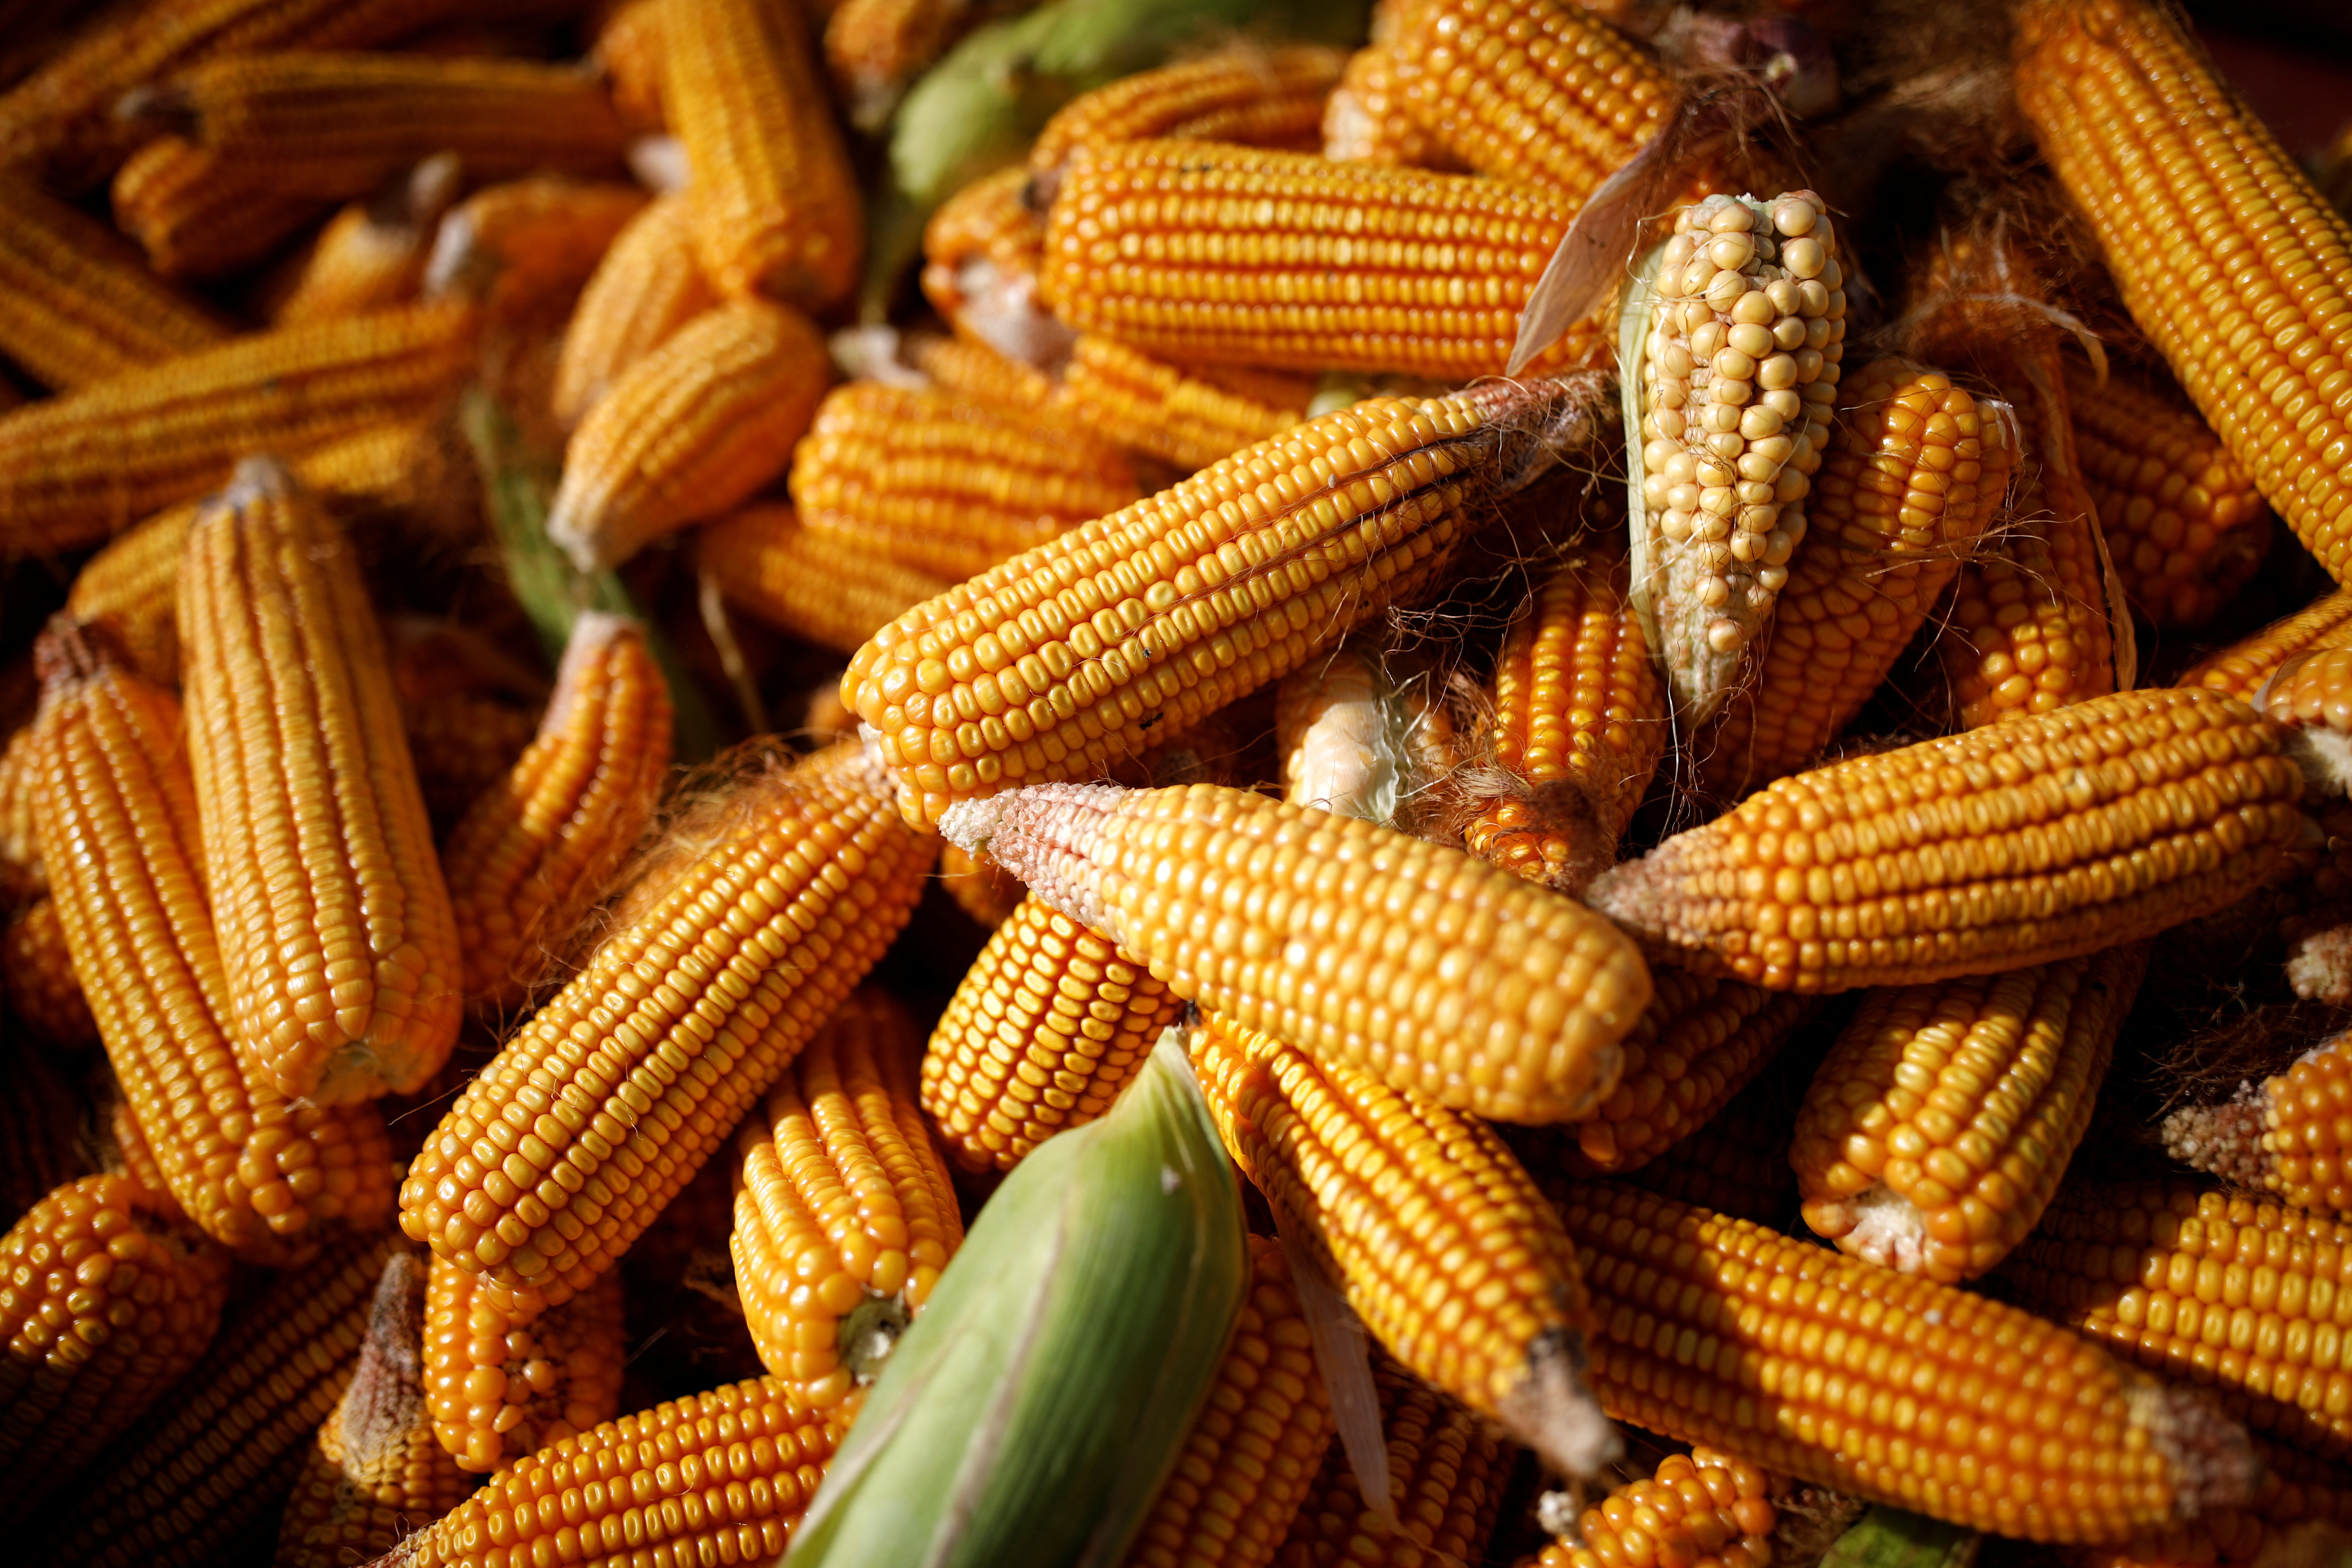 Espigas de milho recém-colhidas (Foto: REUTERS/Carlos Garcia Rawlins)